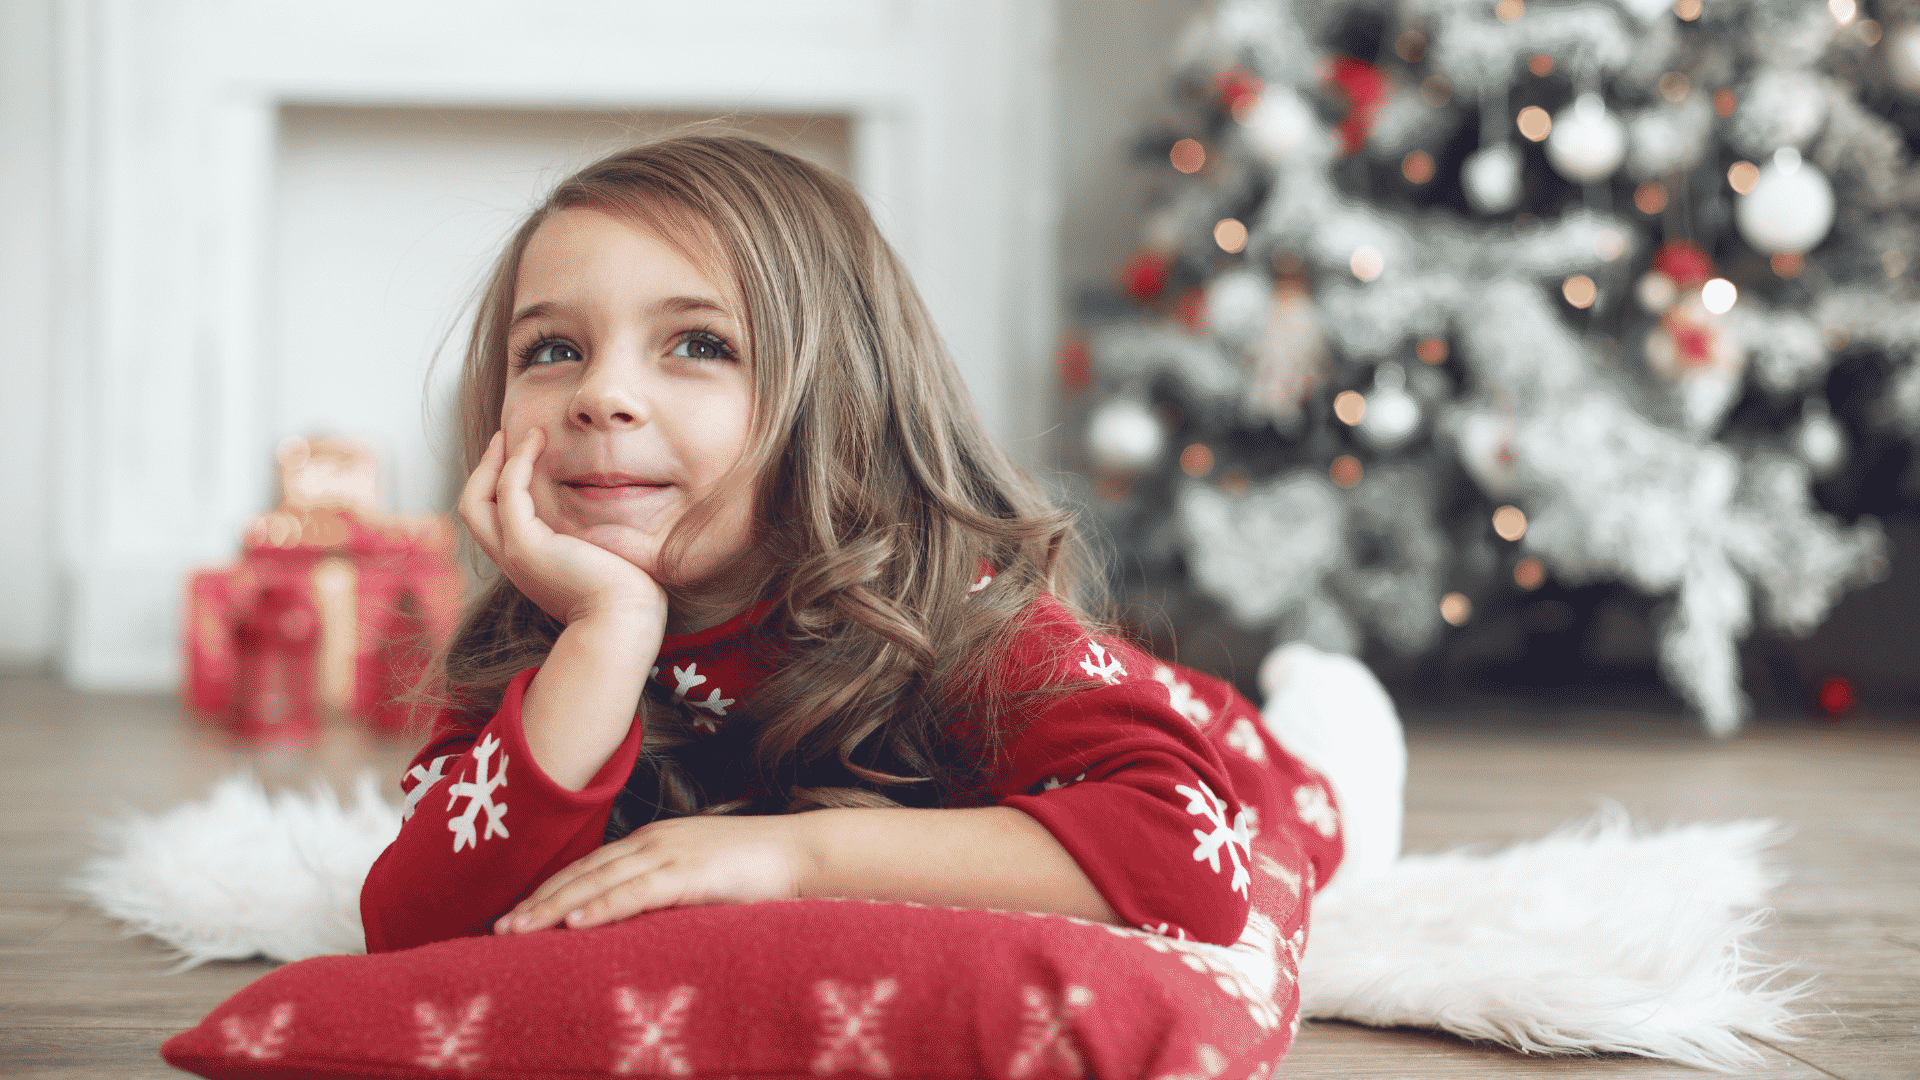 Reflexão sobre o Natal: qual é o verdadeiro sentido dele?